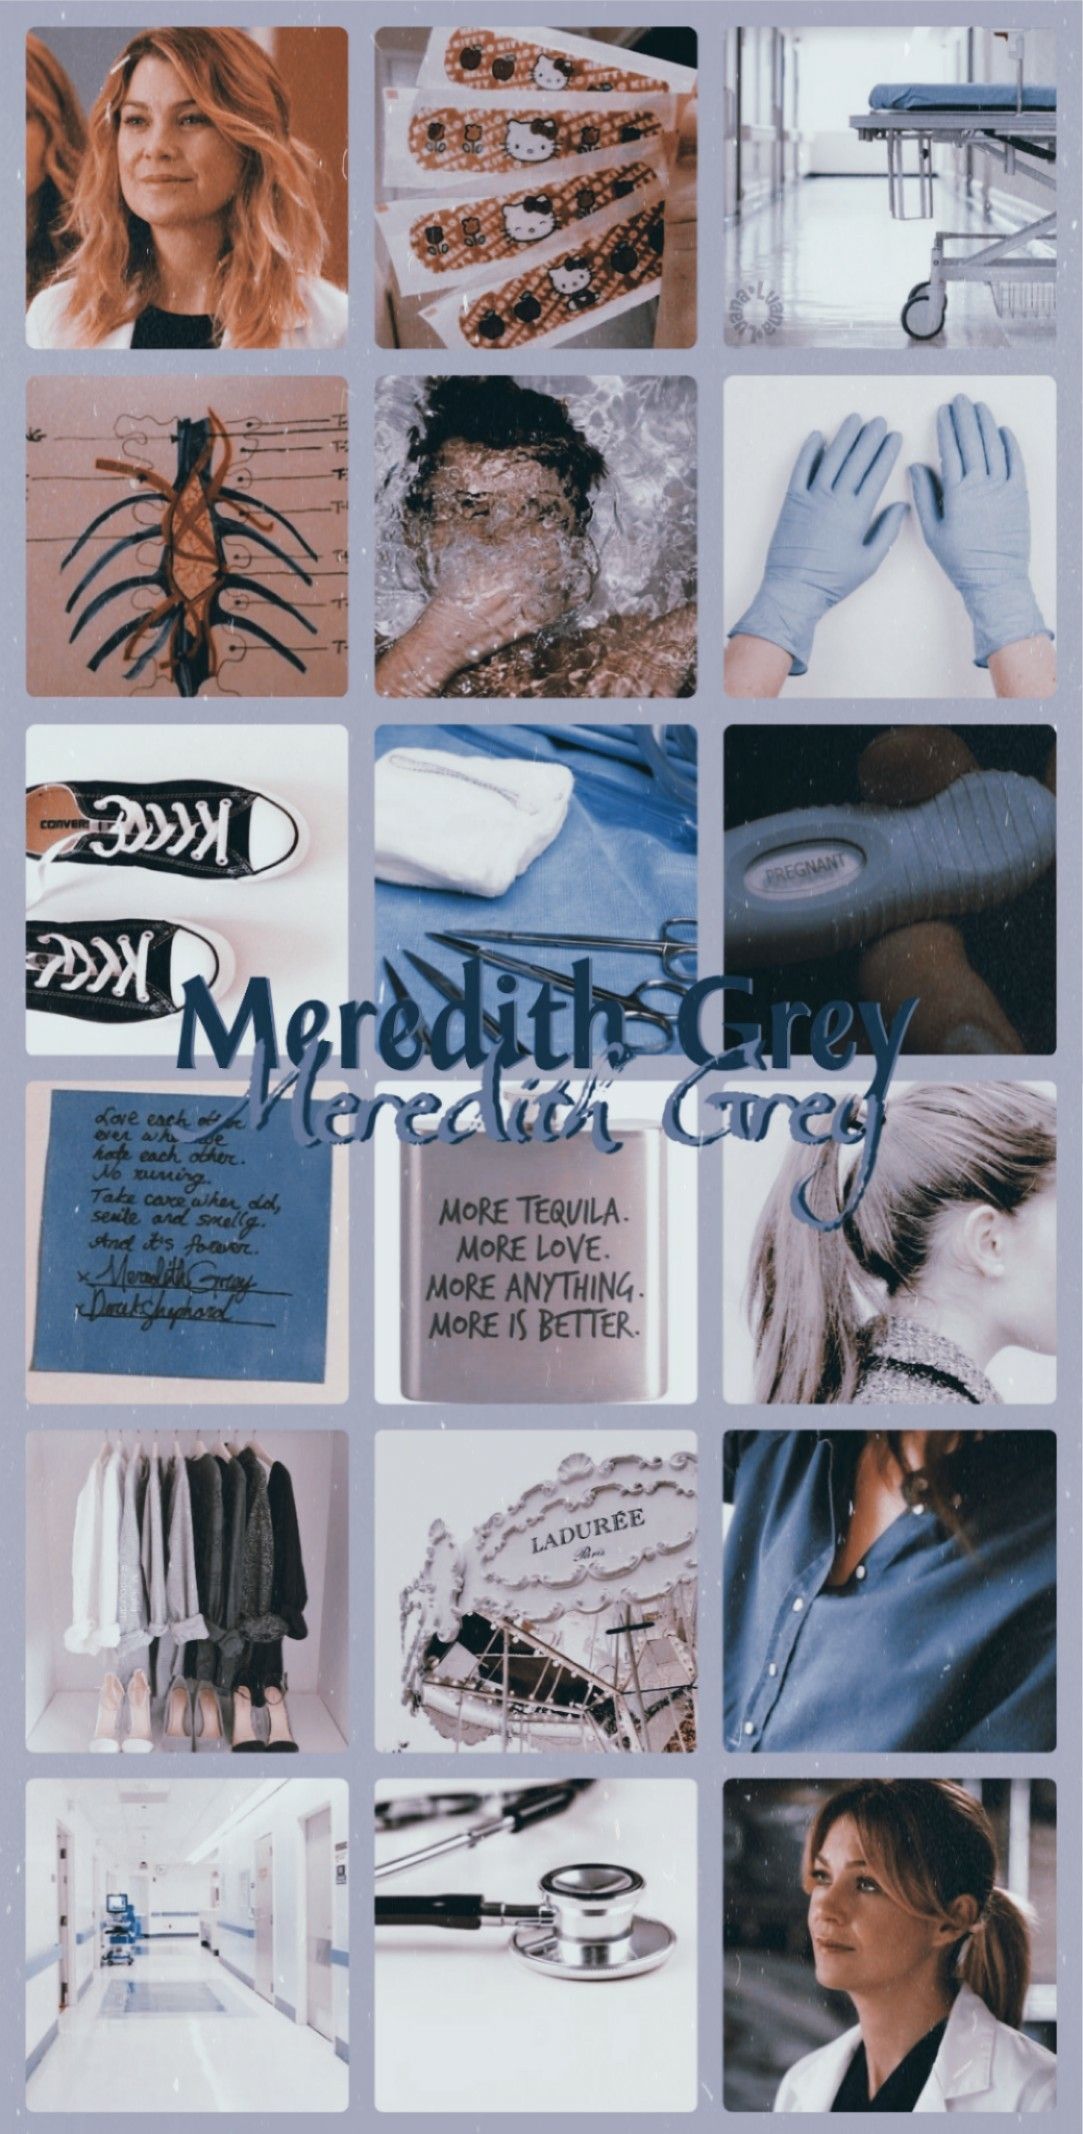 Aesthetic 2.0 Meredith Grey, Grey's Anatomy. Greys anatomy characters, Greys anatomy episodes, Meredith grey